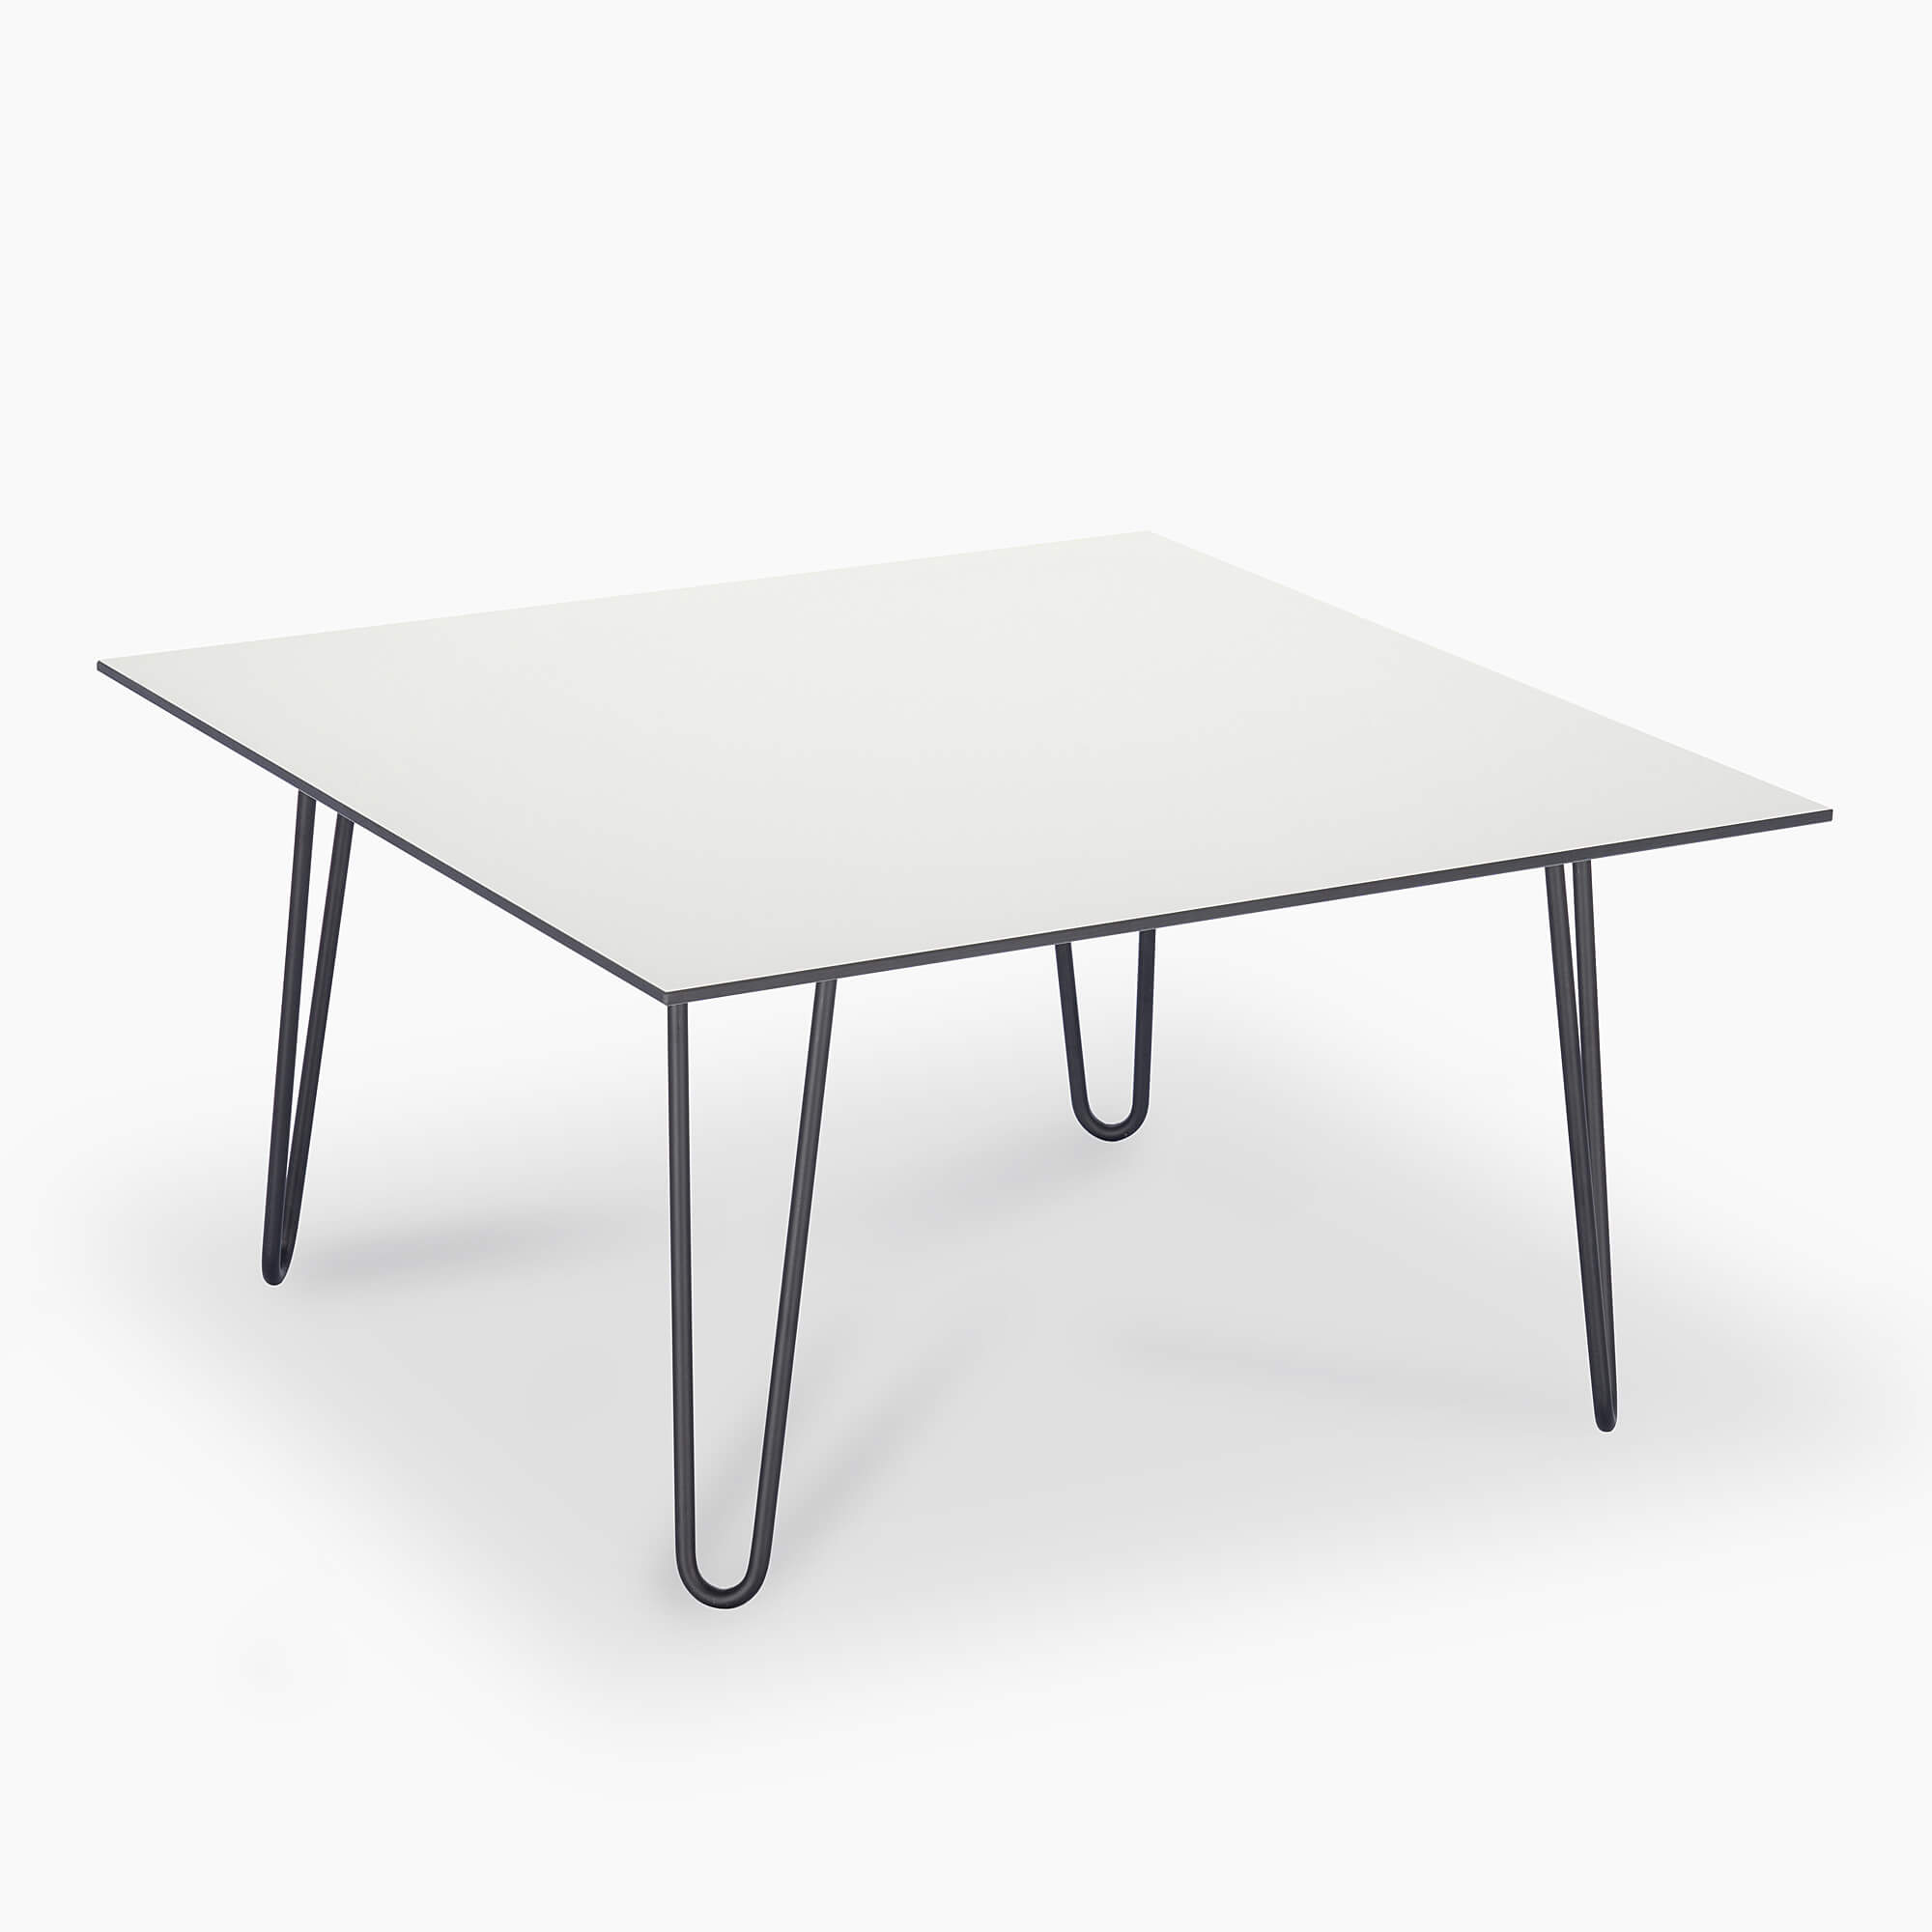 Square-white-coffee-table-80x80cm-black-metal-legs